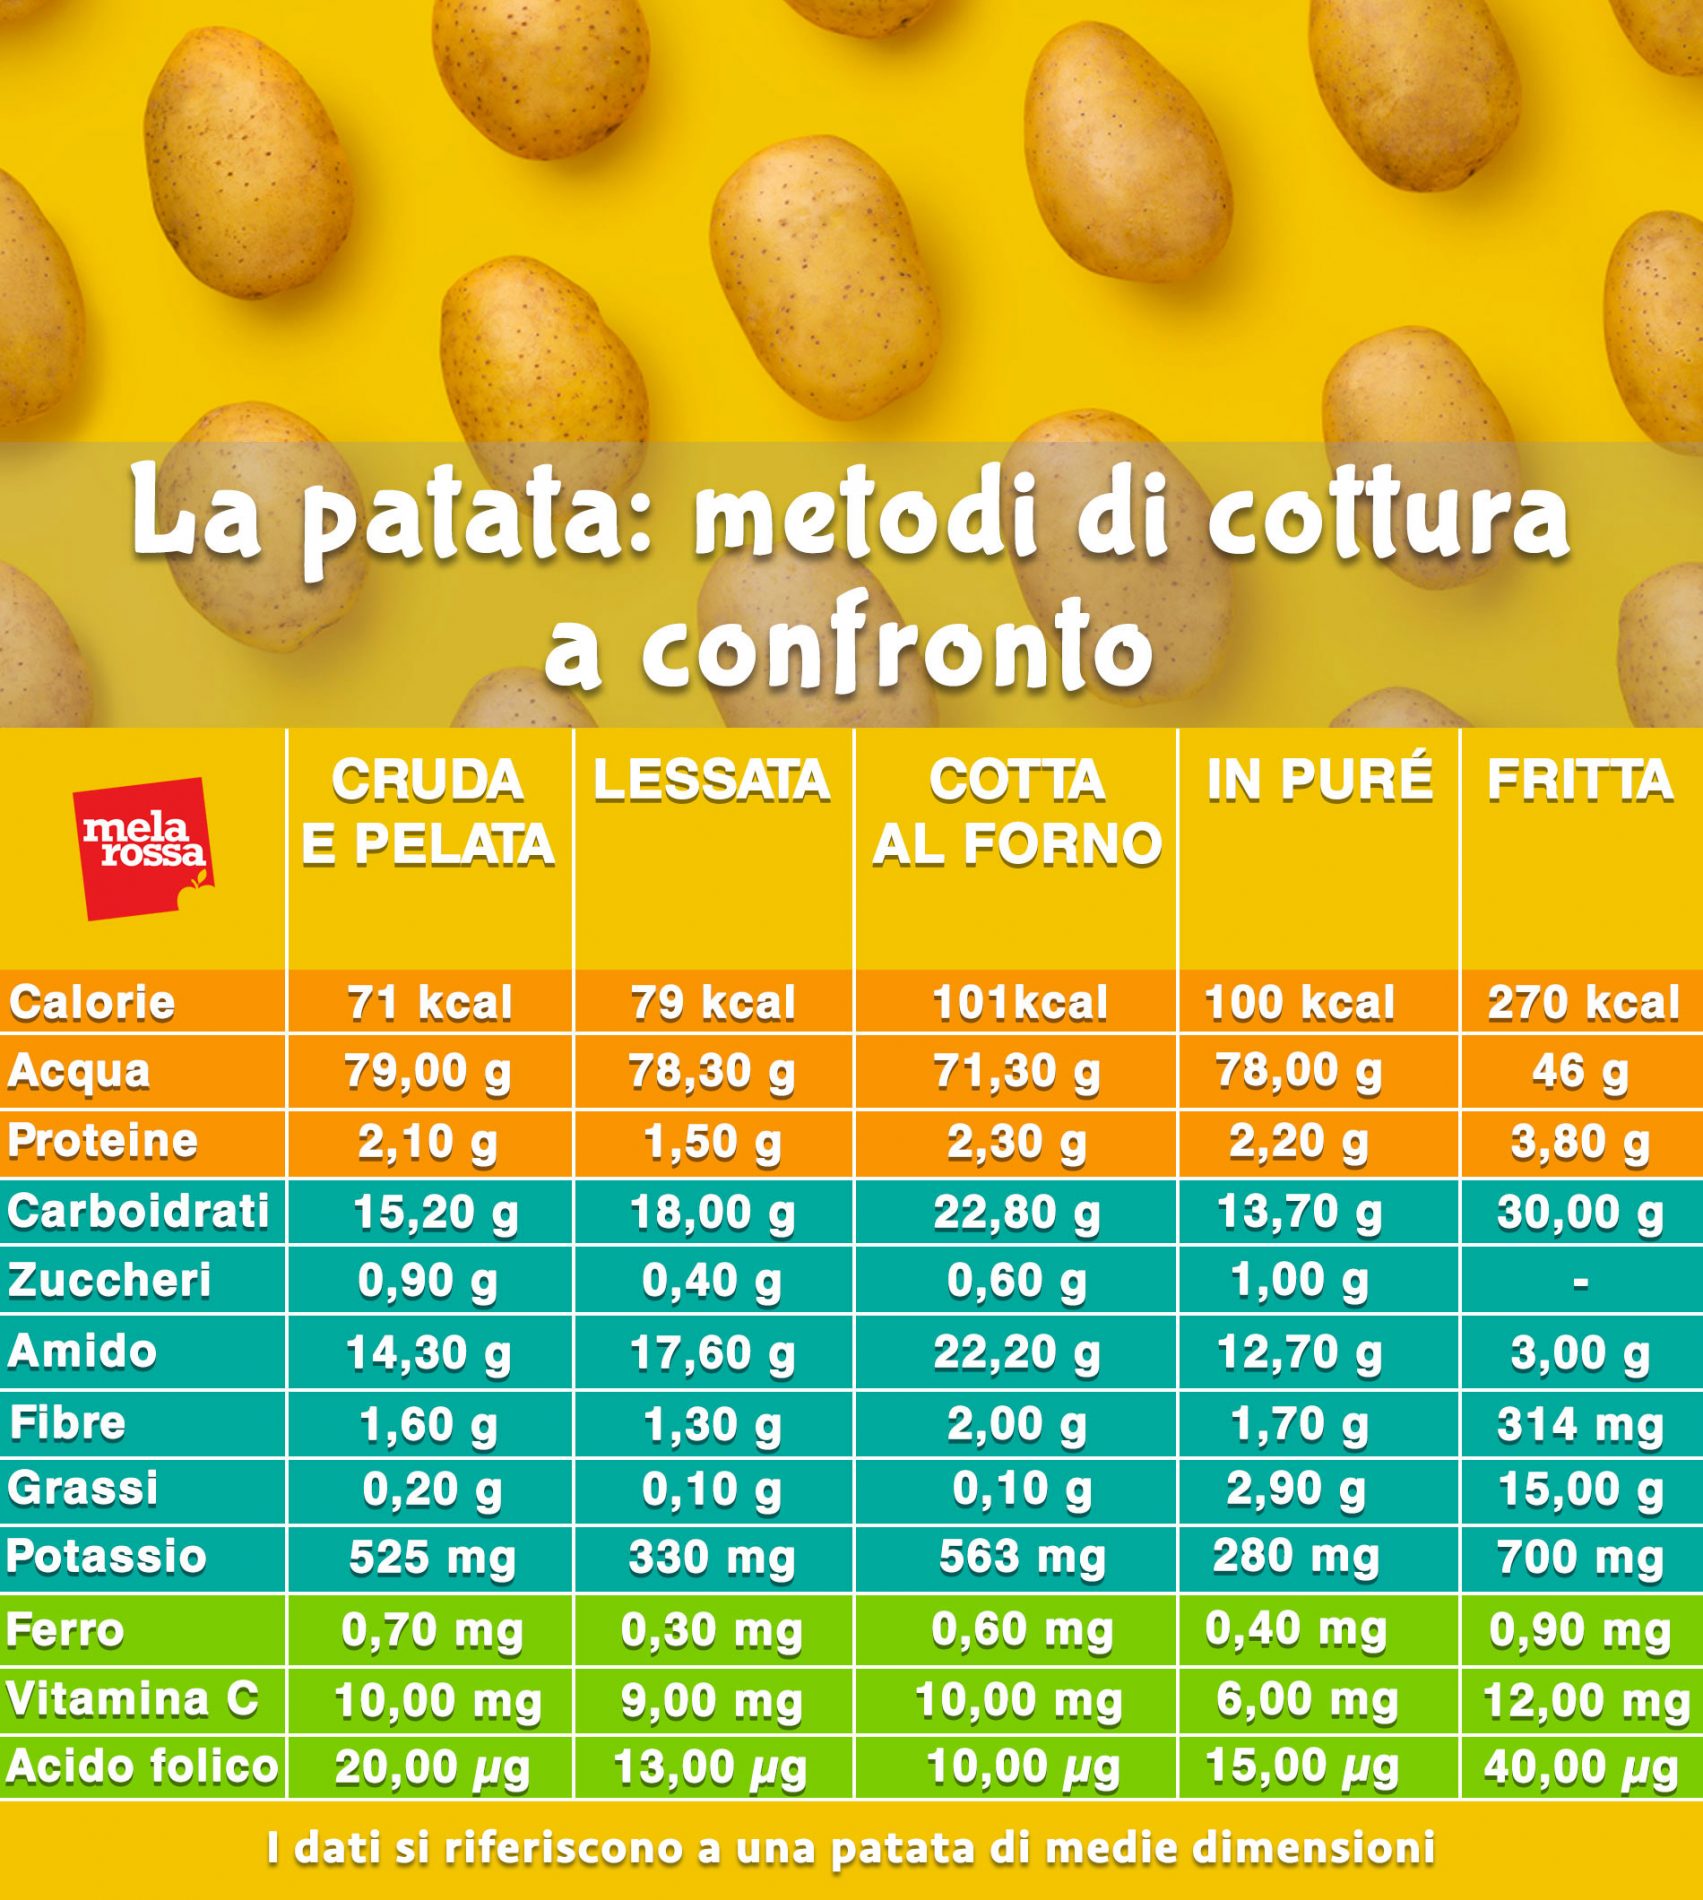 metodi di cottura patate come cambiano valori nutrizionali